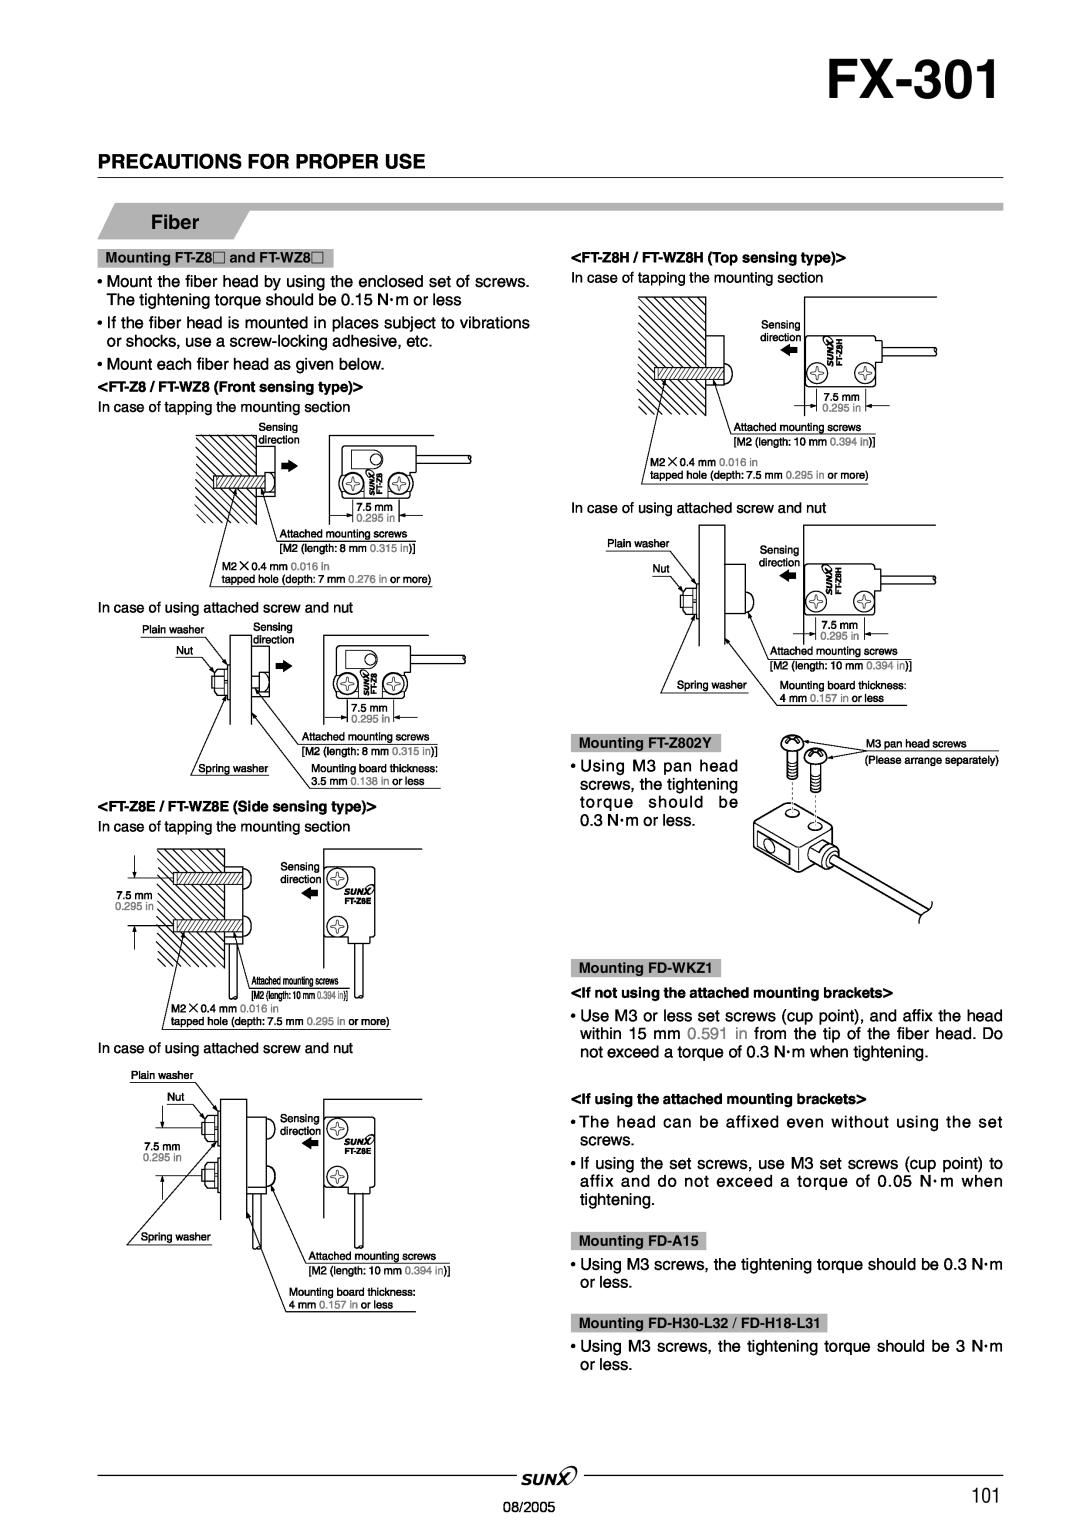 Panasonic FX-301 manual Precautions For Proper Use, Fiber, •Mount each fiber head as given below 